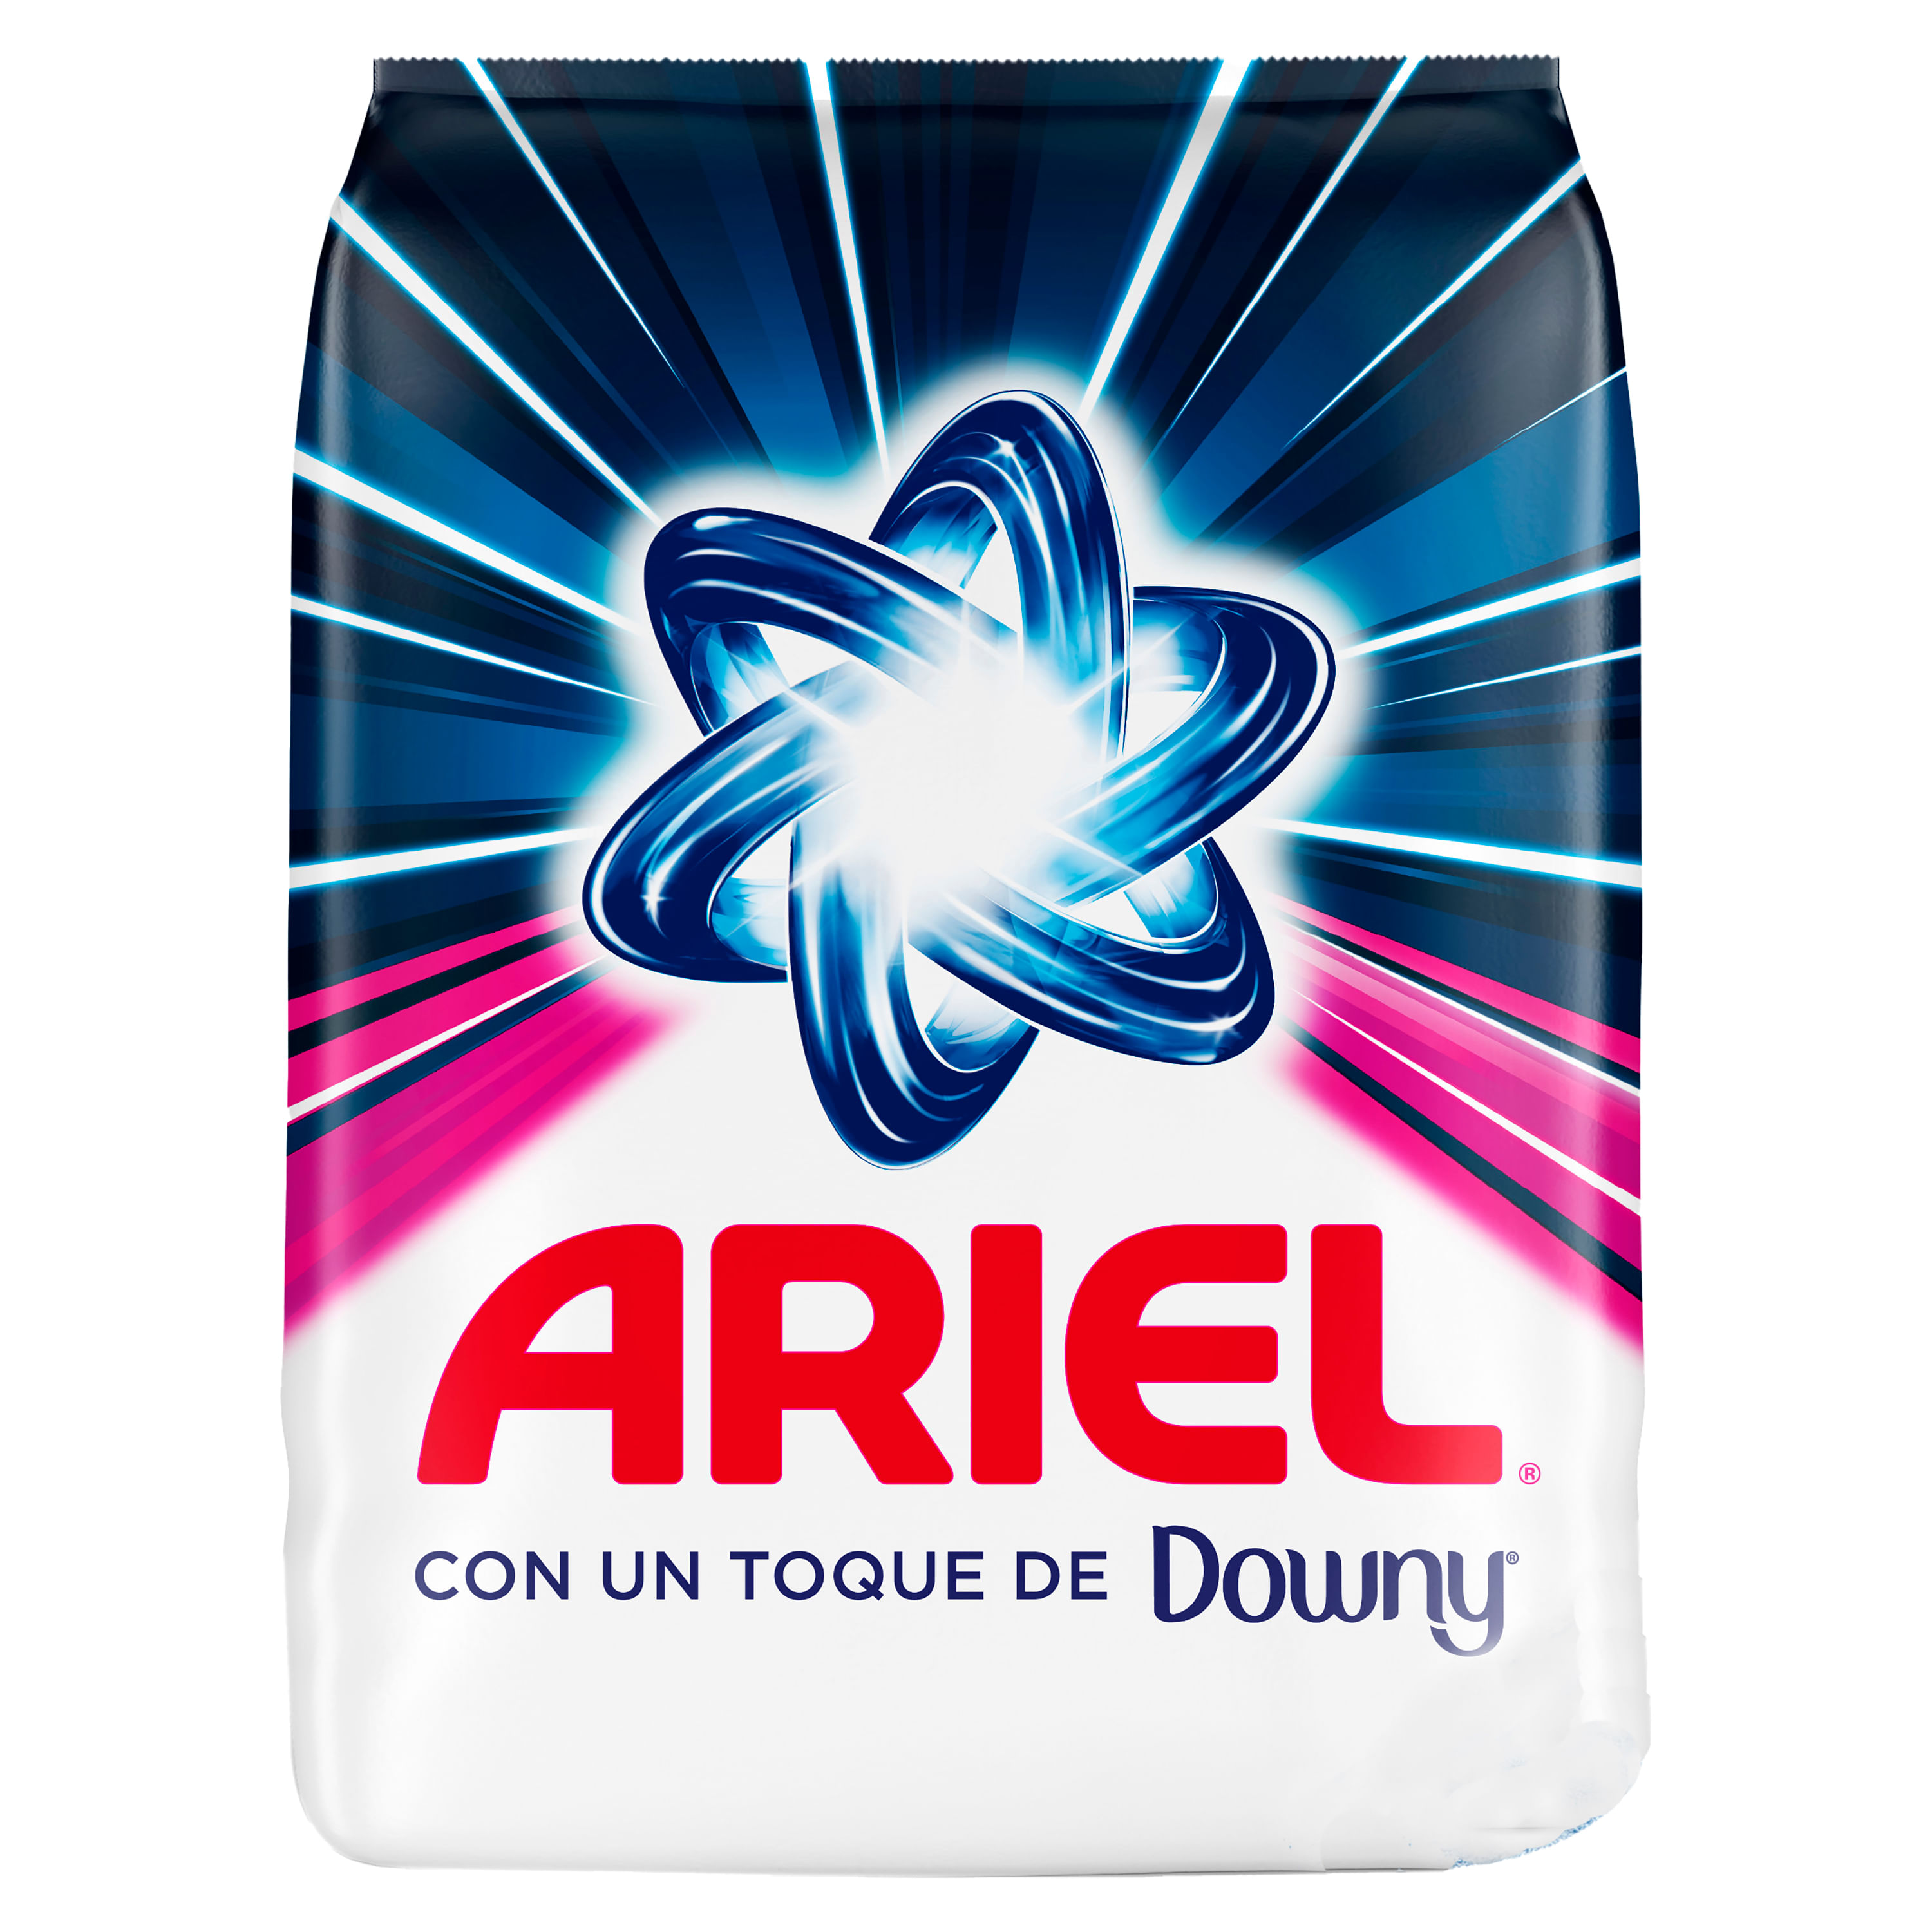 Ariel Detergente en Polvo con un Toque de Downy 8.8 kg / 110 Lavadas, Suministros de lavandería, Pricesmart, Santa Ana